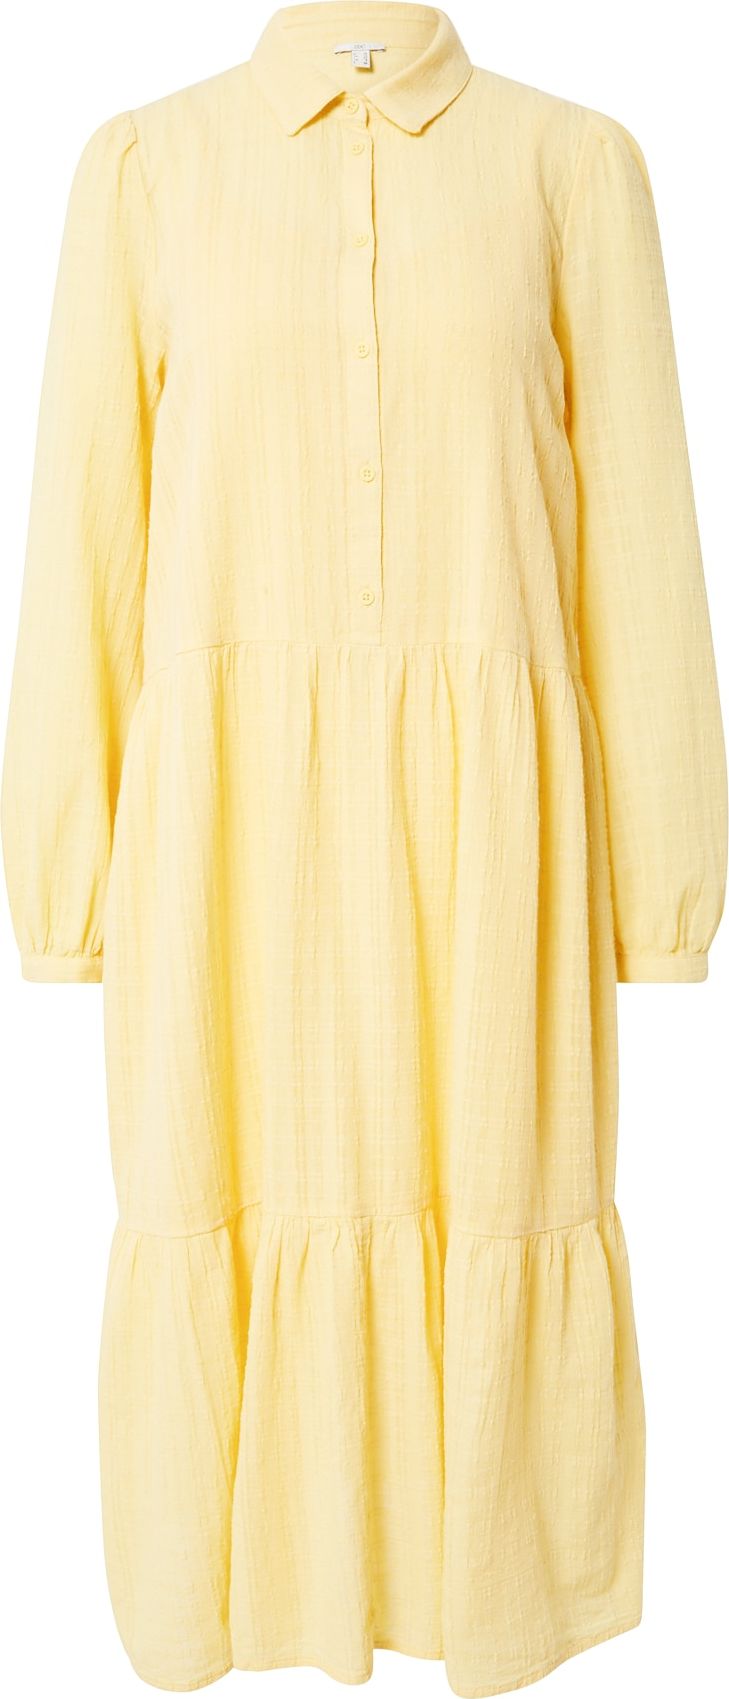 ESPRIT Košilové šaty světle žlutá